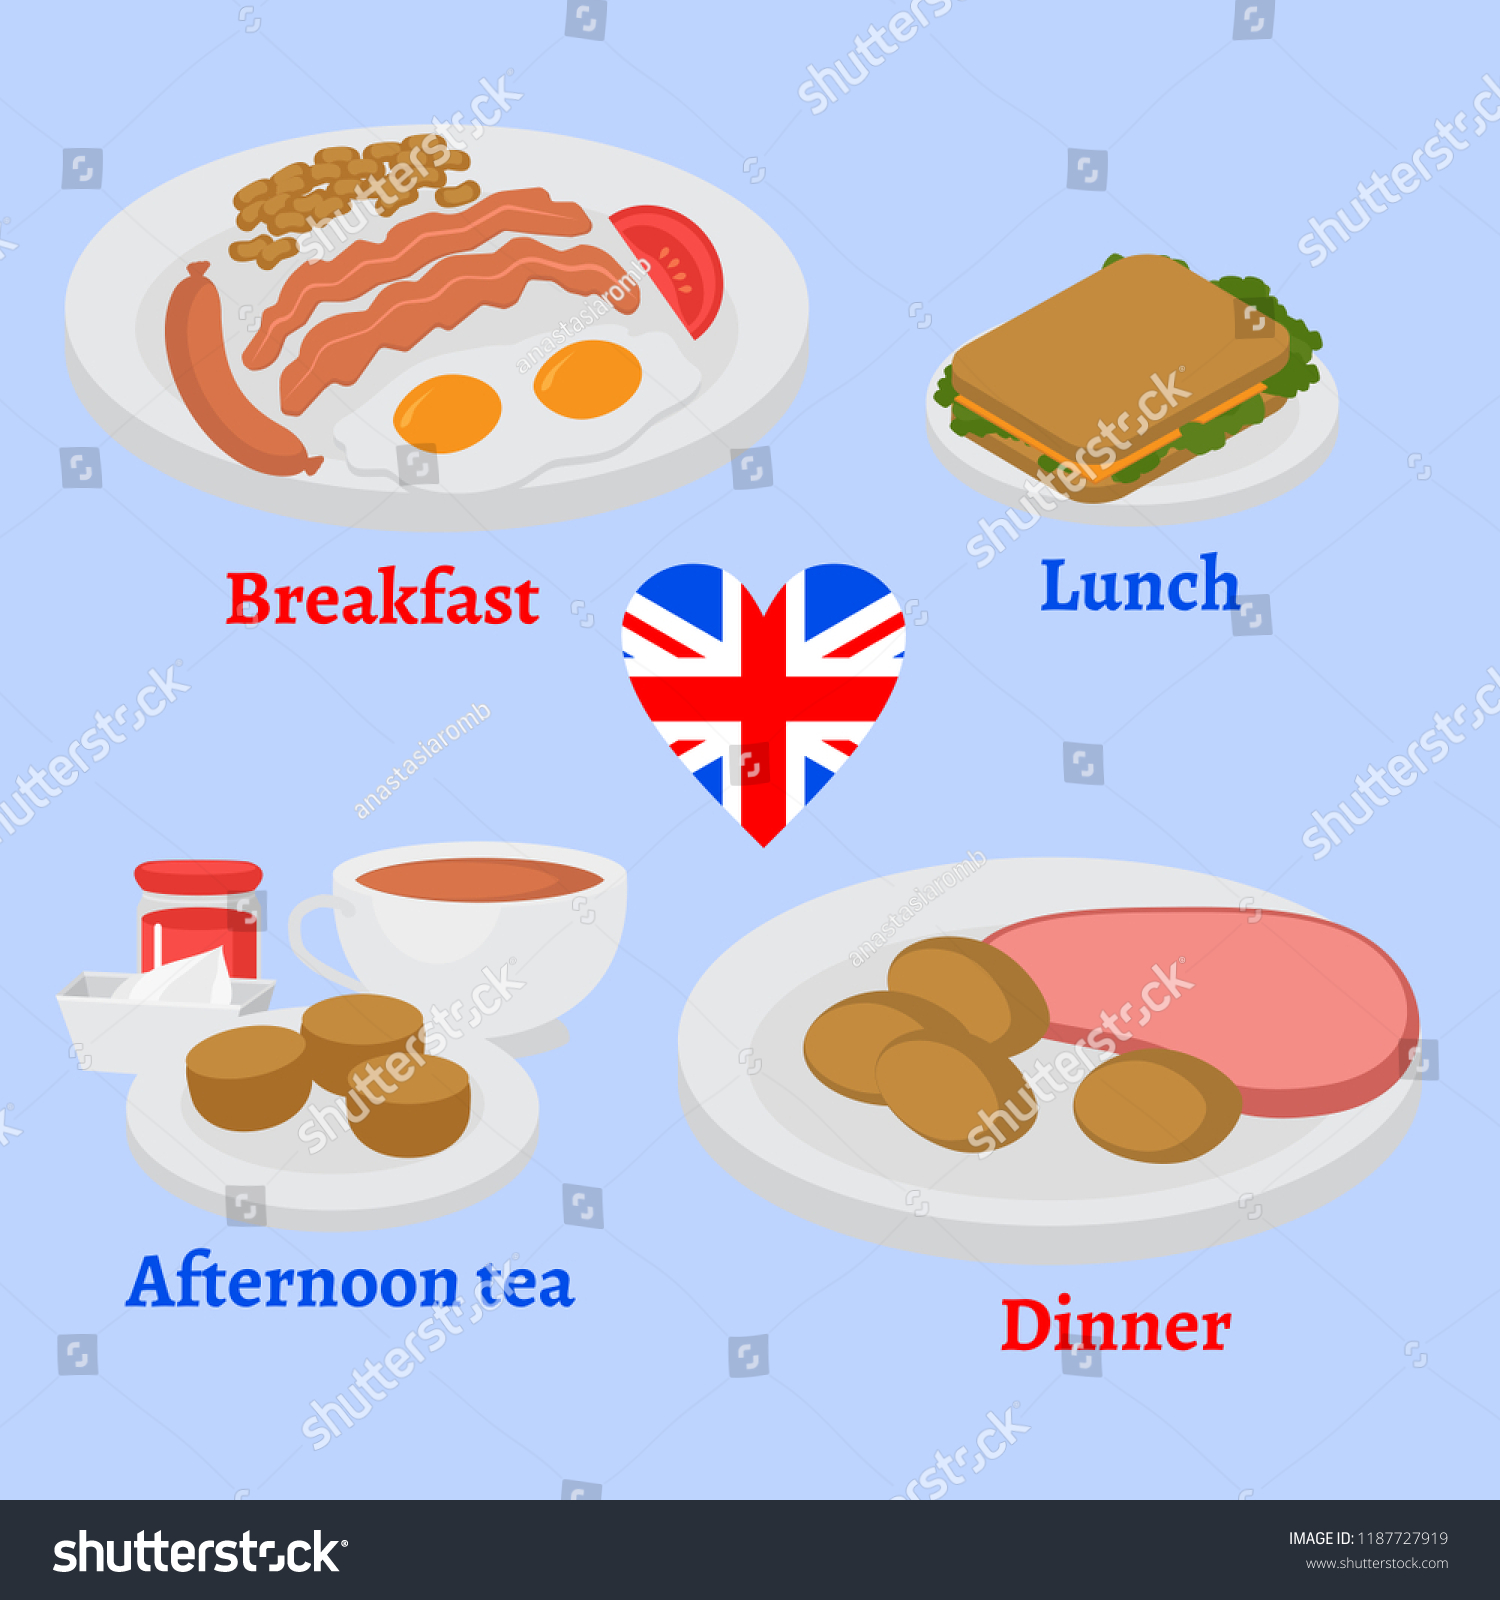 Как будет ужин на английском. Завтрак обед ужин на английском. Меню на английском завтрак обед ужин. Завтрак обед ланч ужин на английском. Обед по-английски и ужин.